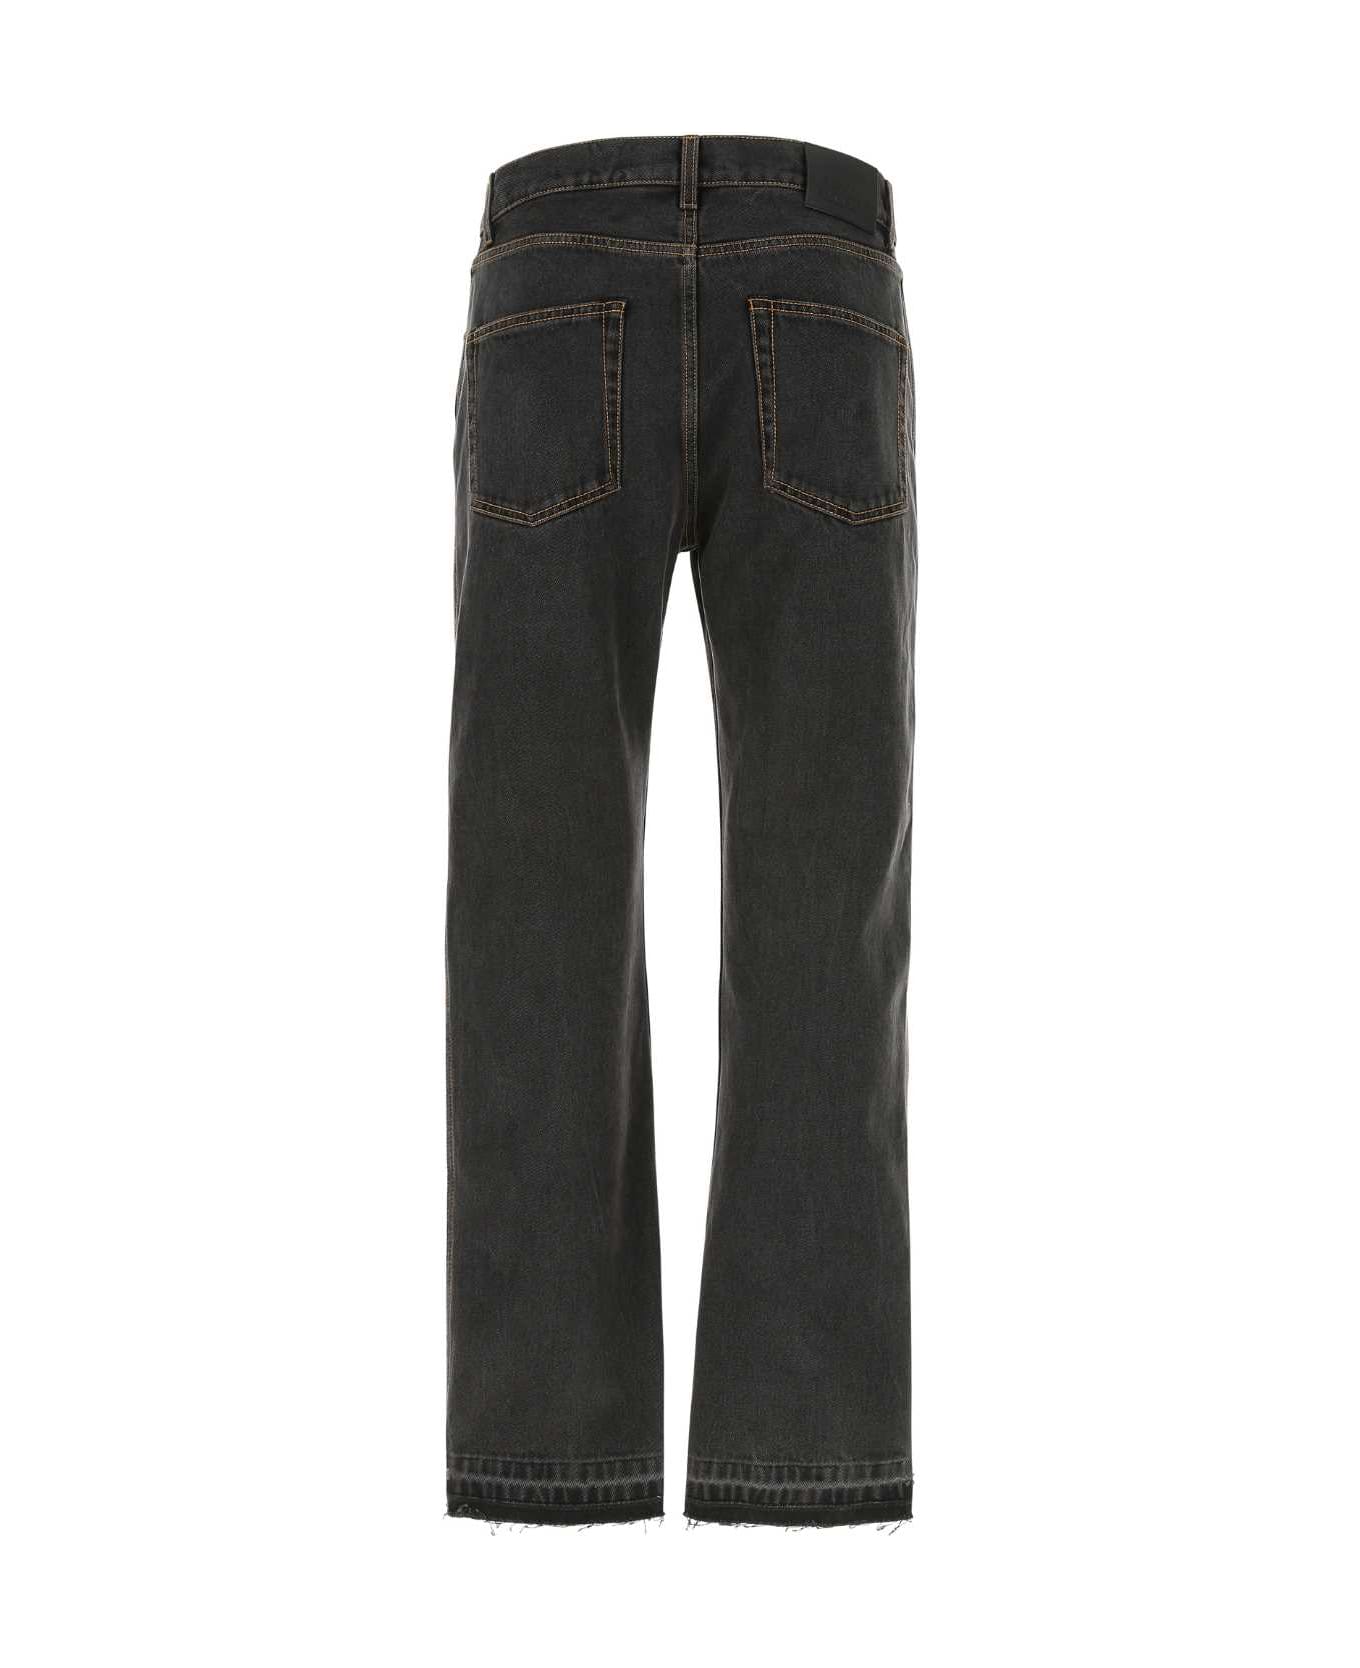 Alexander McQueen Black Denim Jeans - 1001